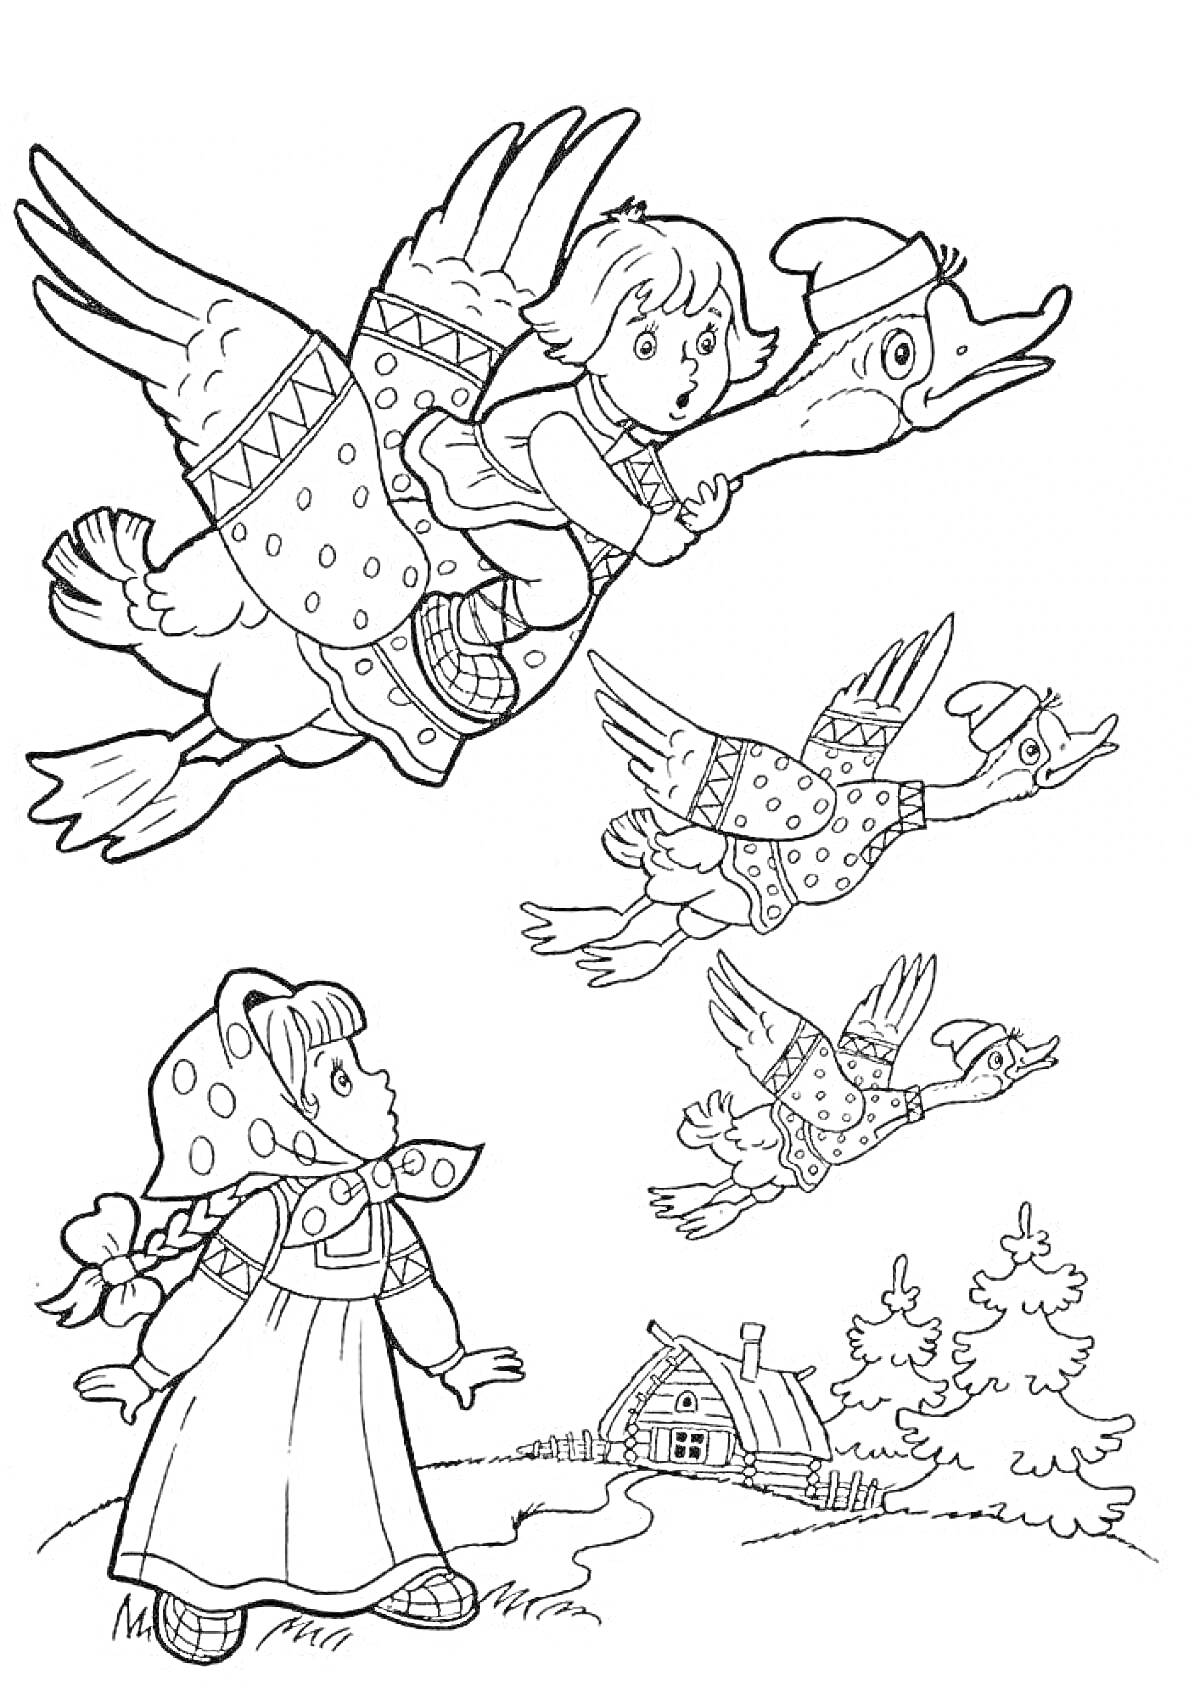 Раскраска Девочка летит на гусе, ещё два гуся летят рядом, девочка стоит на земле и смотрит вверх, домик и деревья на заднем плане